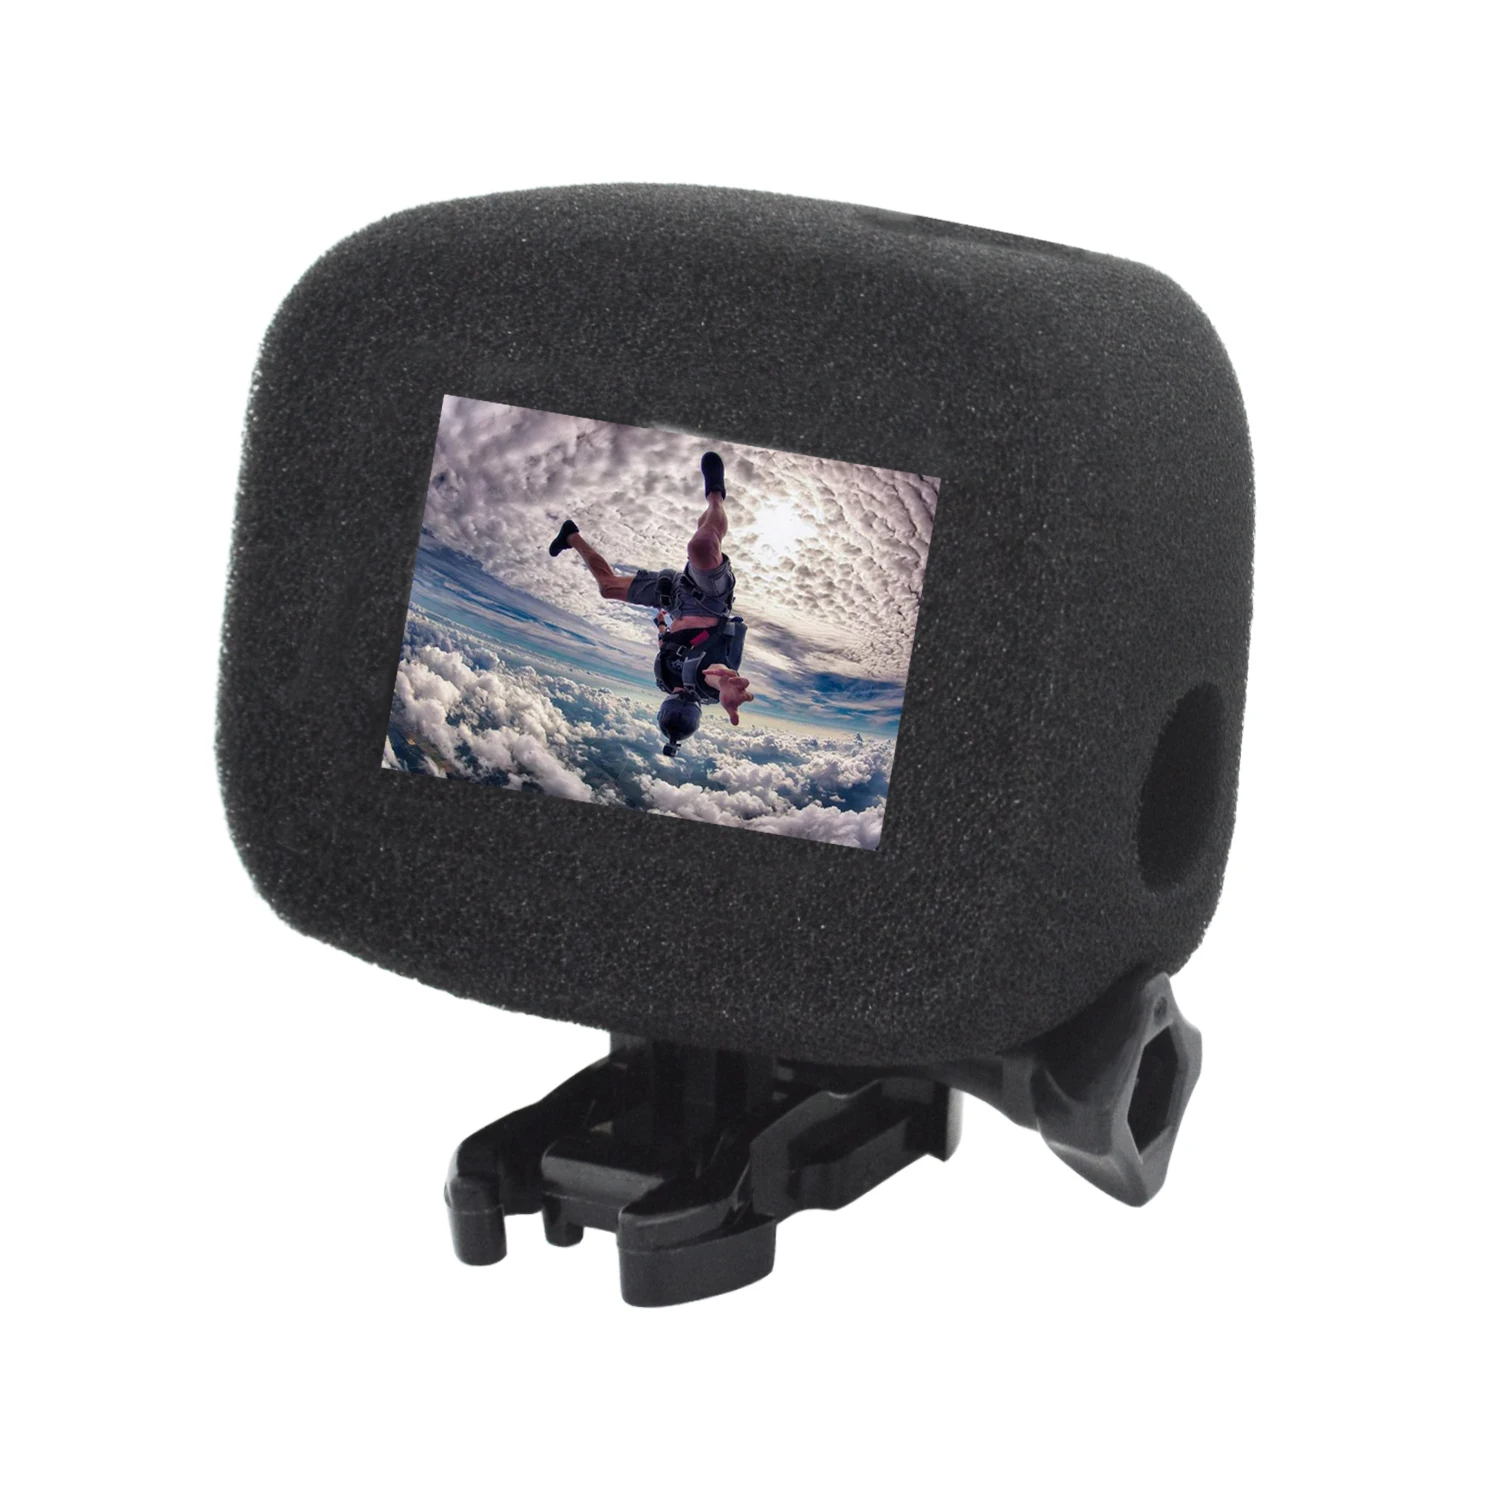 Go pro Аксессуары для камеры пенное покрытие защитный чехол для Gopro Hero 7 6 5 Session аксессуары для спортивной экшн-камеры